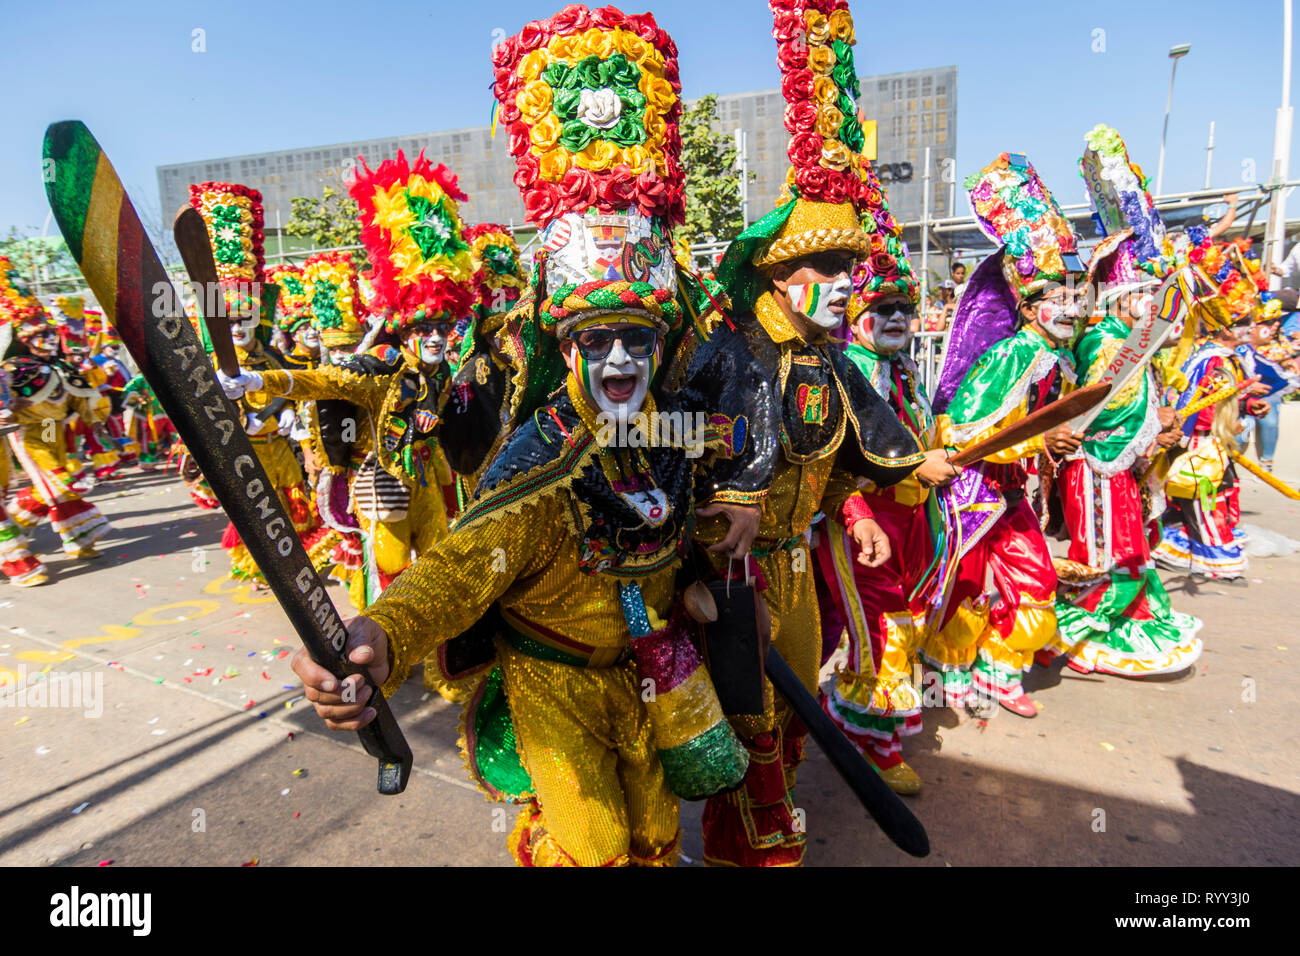 Gruppo di persone vestite in costume del congo. La battaglia dei fiori è un evento che si svolge il sabato del carnevale. Si tratta di una sfilata di carri allegorici, compar Foto Stock